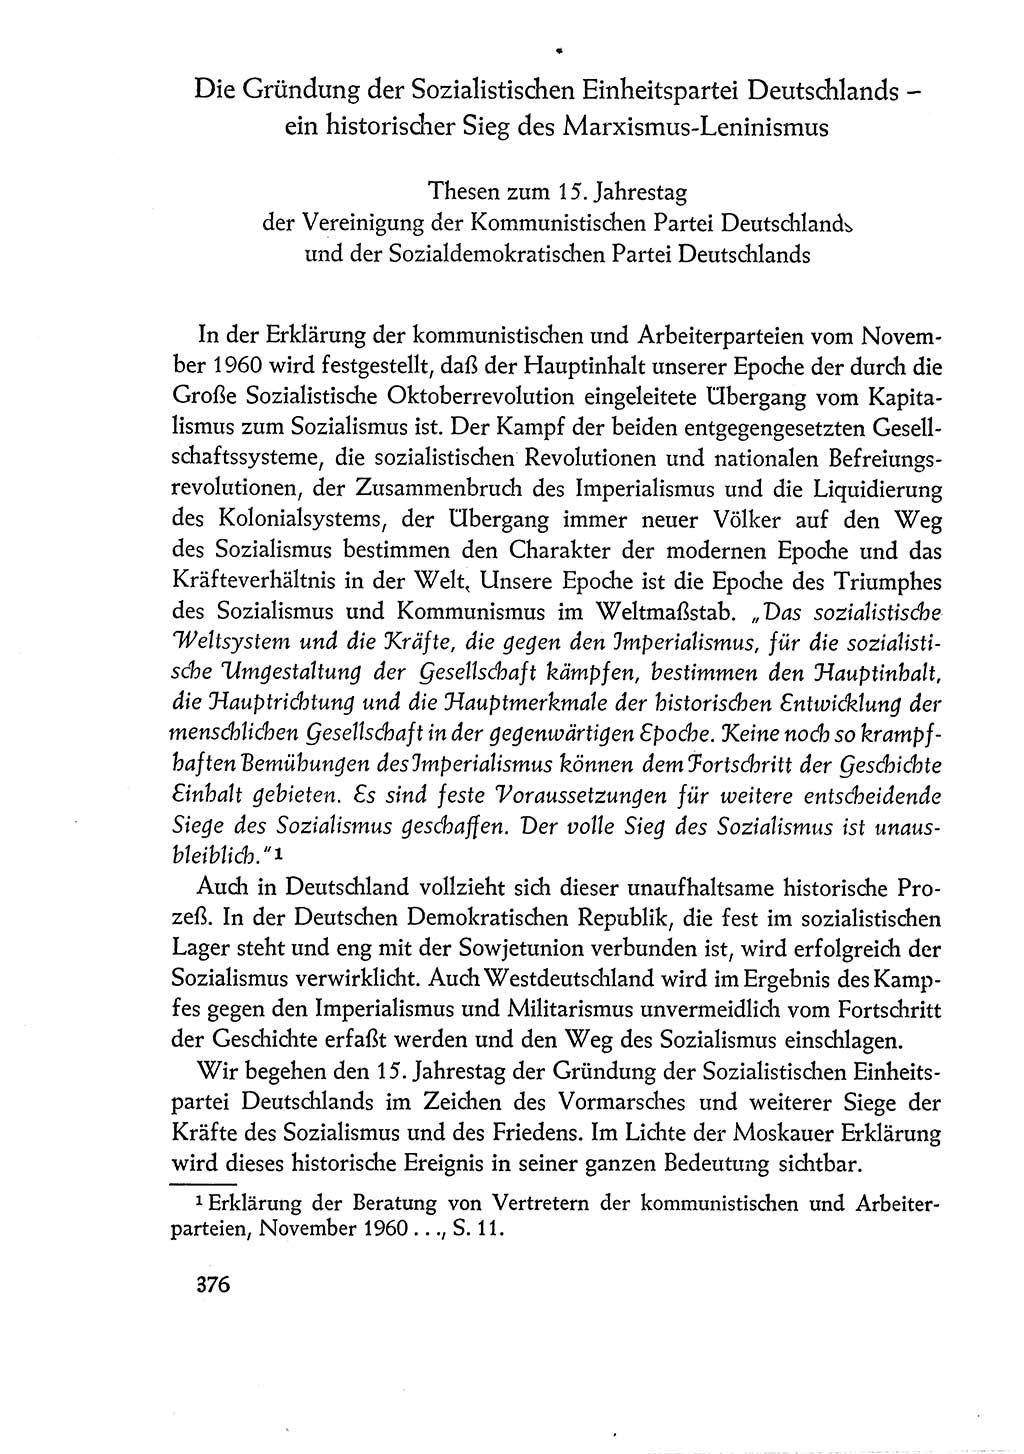 Dokumente der Sozialistischen Einheitspartei Deutschlands (SED) [Deutsche Demokratische Republik (DDR)] 1960-1961, Seite 376 (Dok. SED DDR 1960-1961, S. 376)